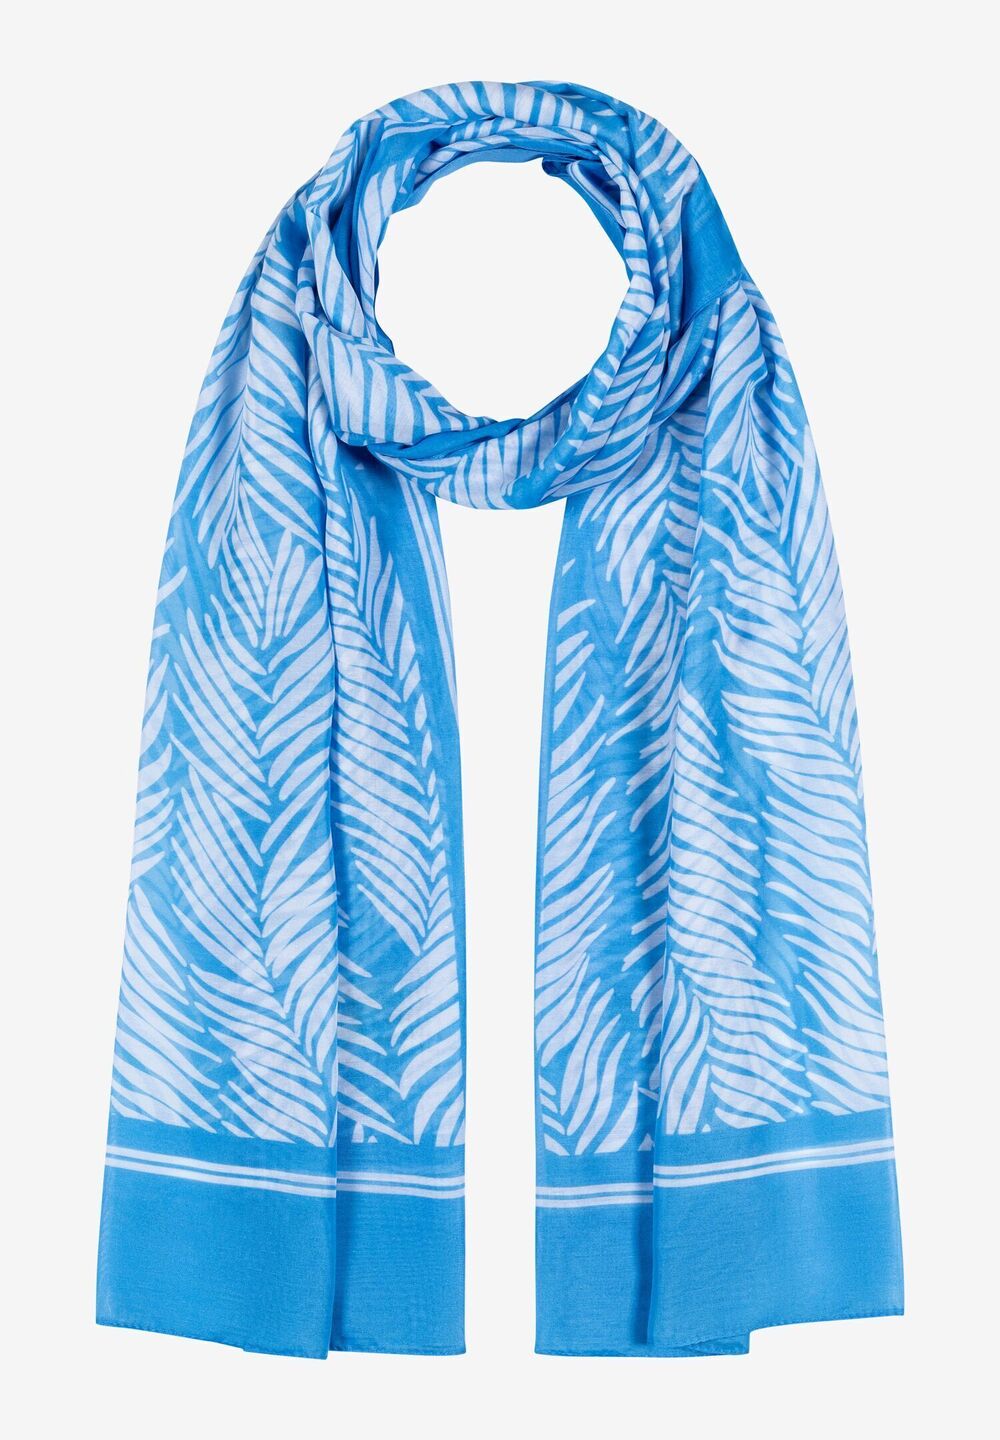 leichter Schal, Palmblätter-Print, Sommer-Kollektion, blau Frontansicht